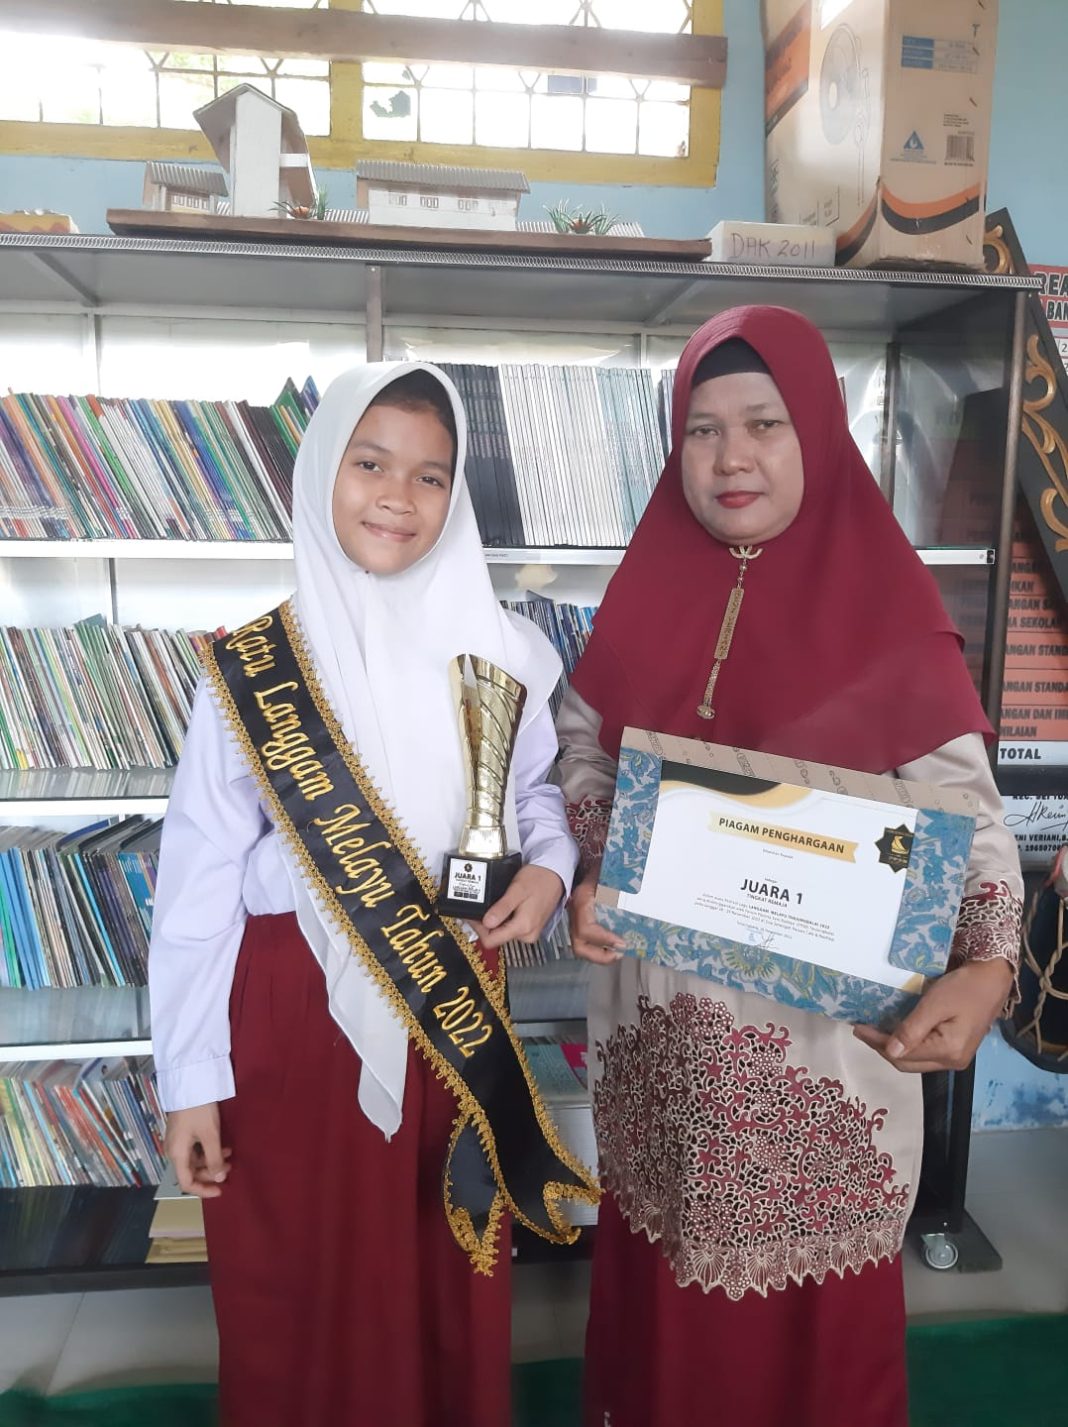 Zahratul Saddah siswi SDN 130003 dengan merangkul tropy juara, berfoto bersama Kepala Sekolah Reni Veriani di ruang kelas, Rabu (7/12/2022).